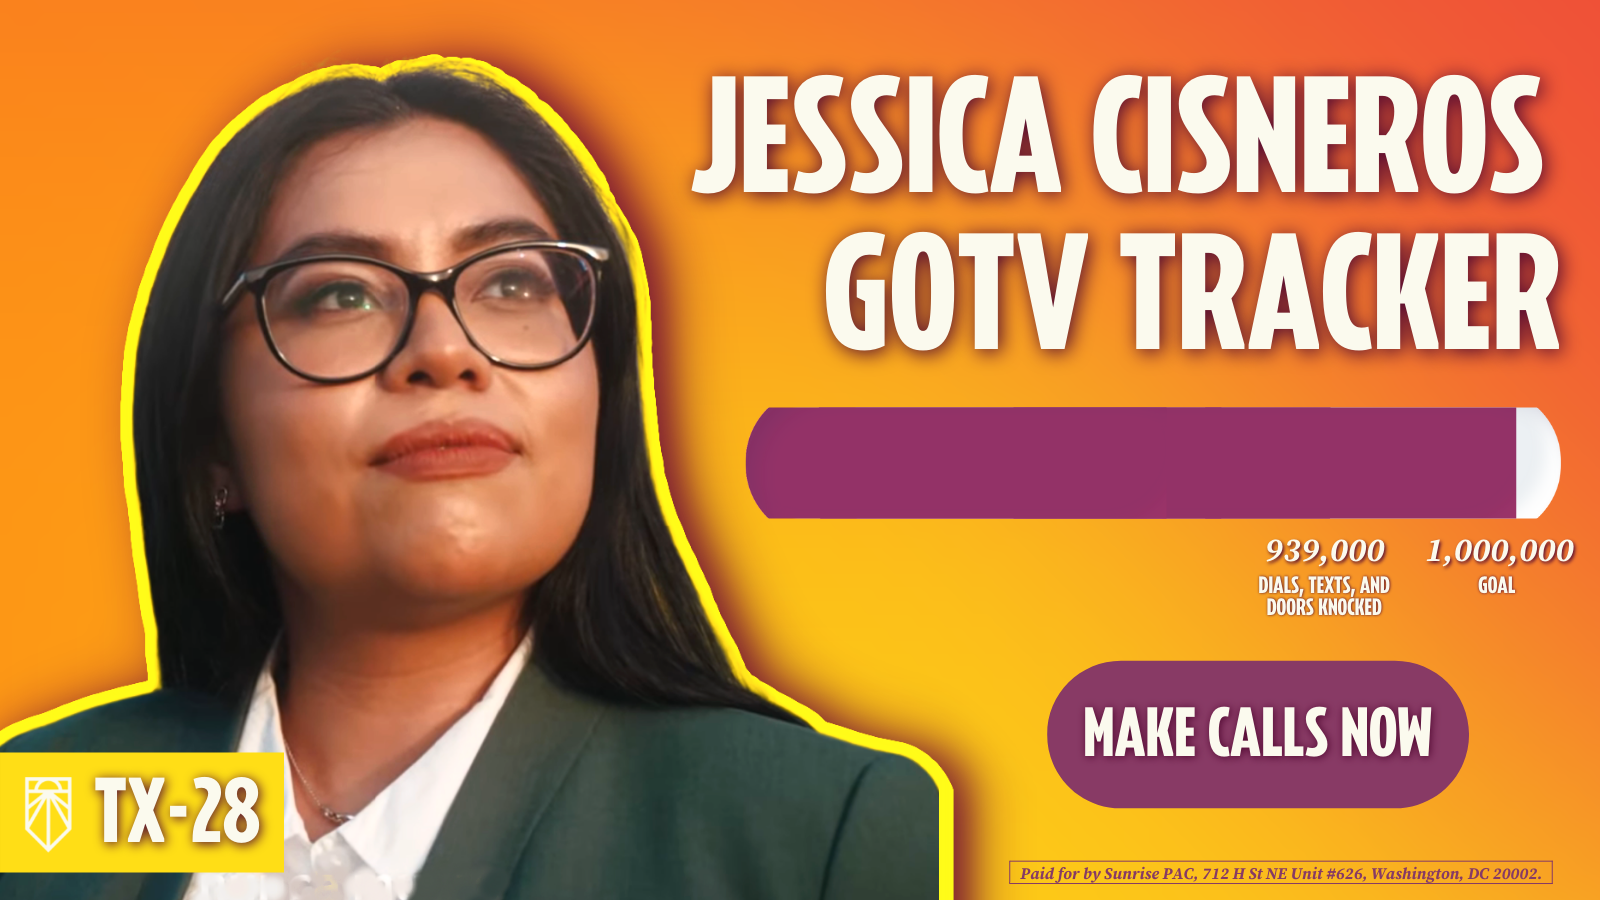 Jessica Cisneros GOTV Tracker – 939,000 versuchte Wählerkontakte, 1,000,000 Ziele – Anrufe tätigen. Bezahlt von Sunrise PAC, 712 H St NE Unit #626, Washington, DC 20002.